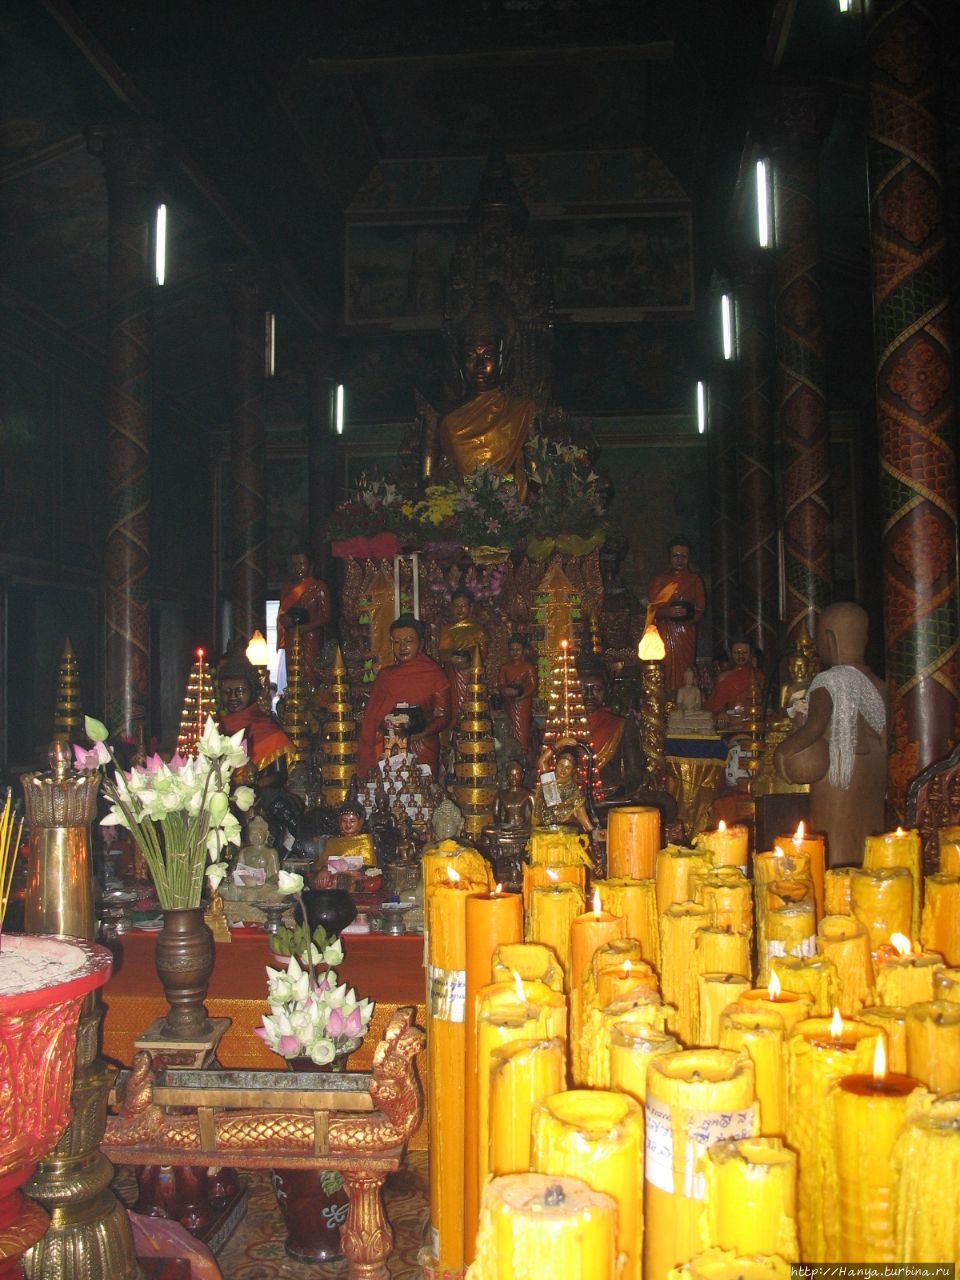 Ват Пном, или Храм на горе. Центральная вихара